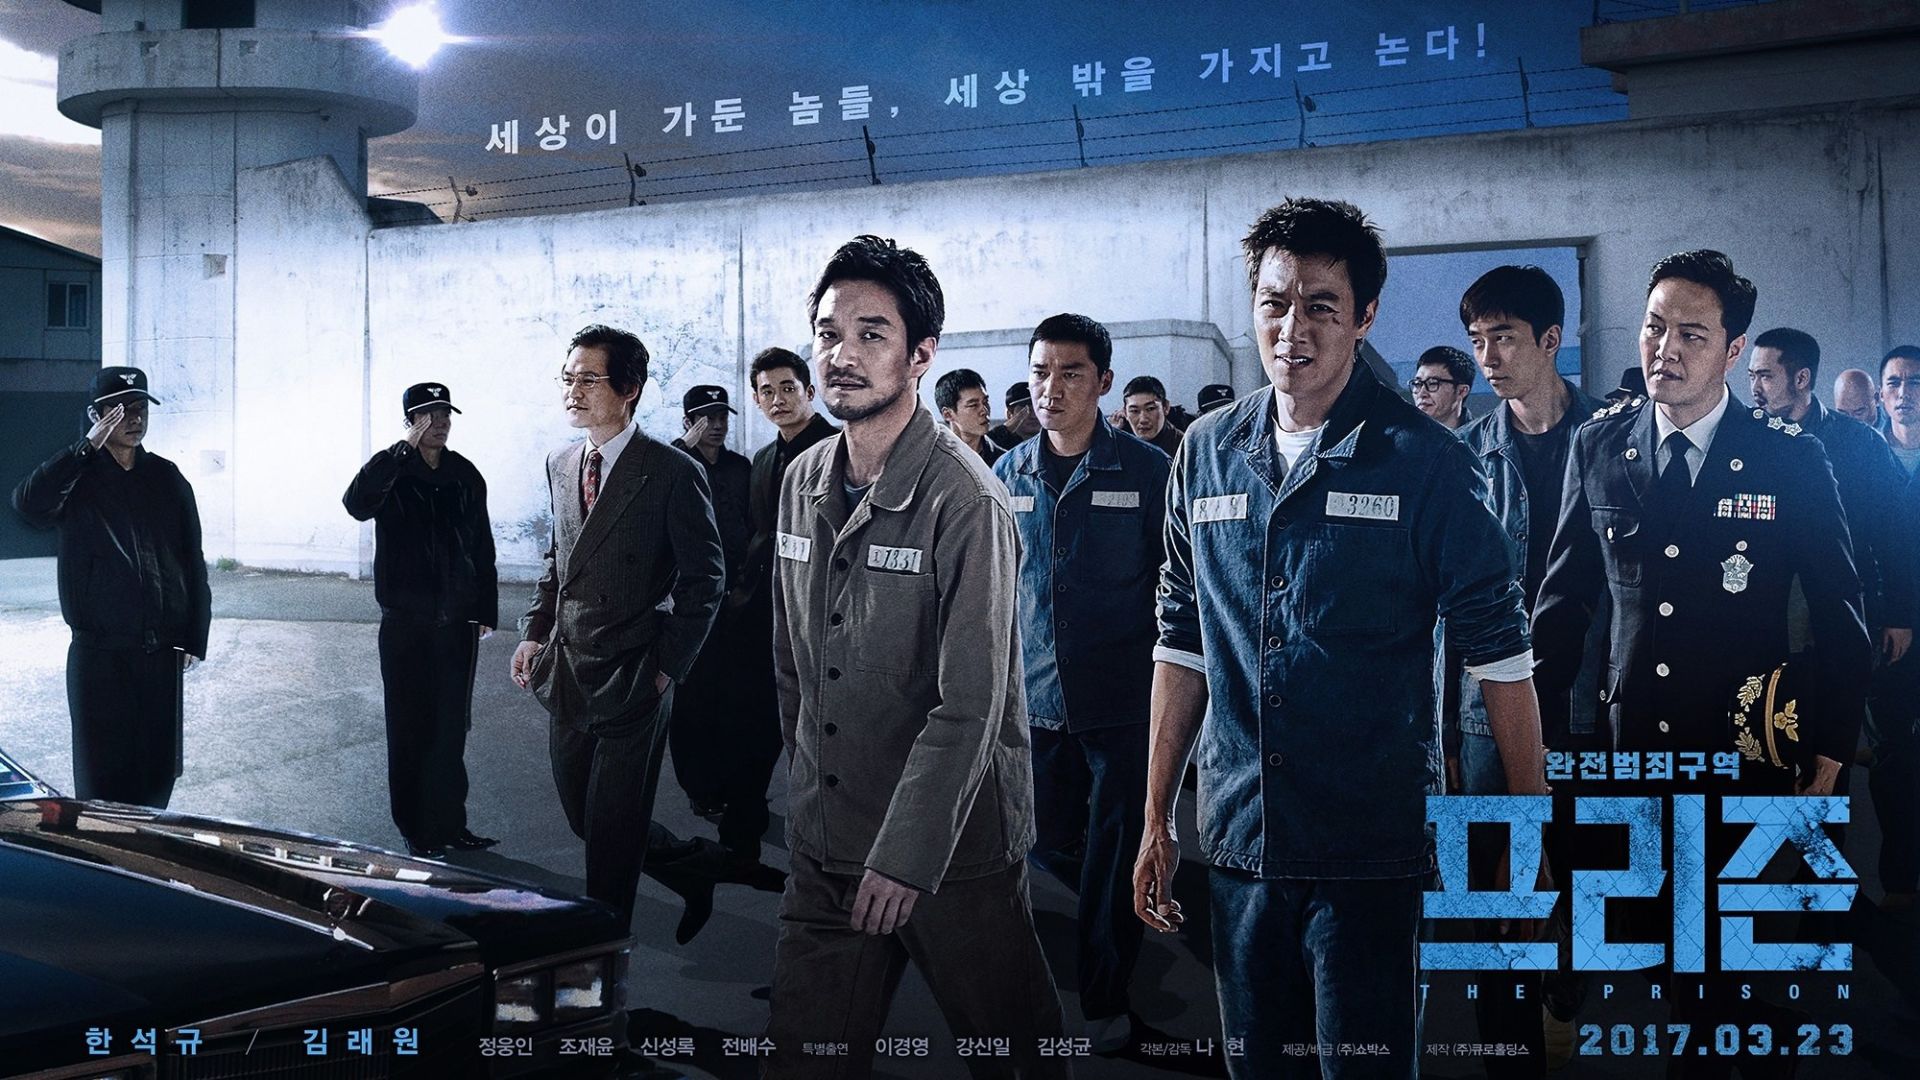 دانلود فیلم کره ای The Prison 2017